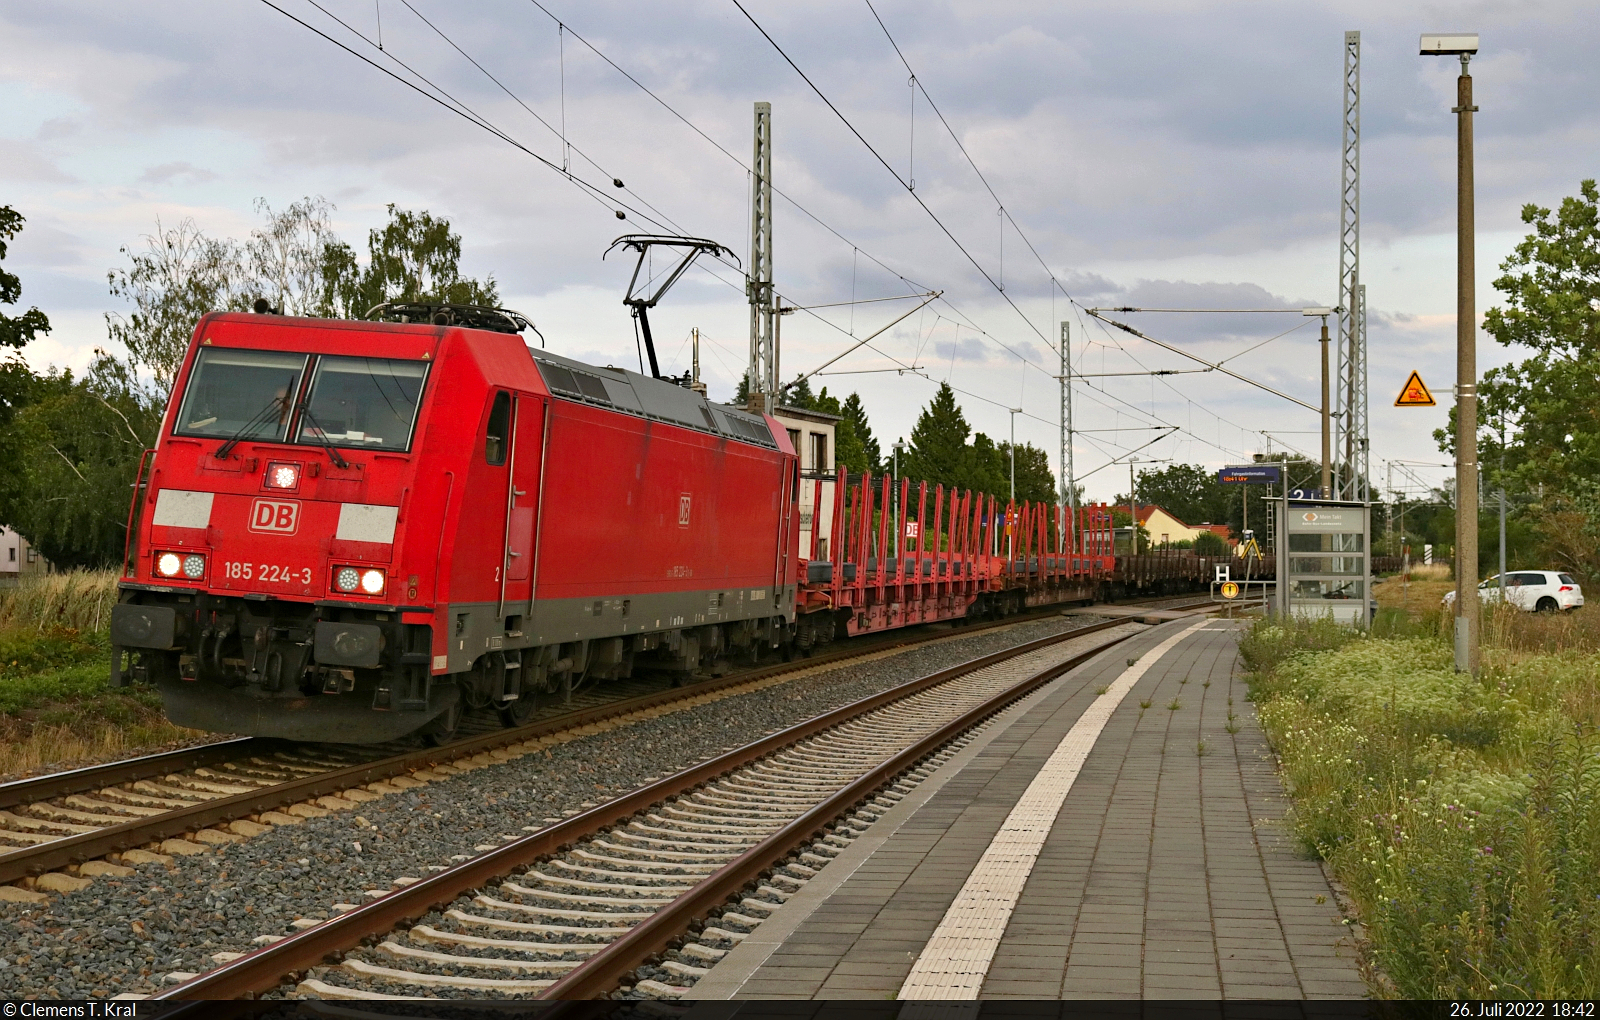 185 224-3 unterwegs mit stählerner Fracht im Hp Zscherben auf Gleis 1 Richtung Sangerhausen.

🧰 DB Cargo
🕓 26.7.2022 | 18:42 Uhr